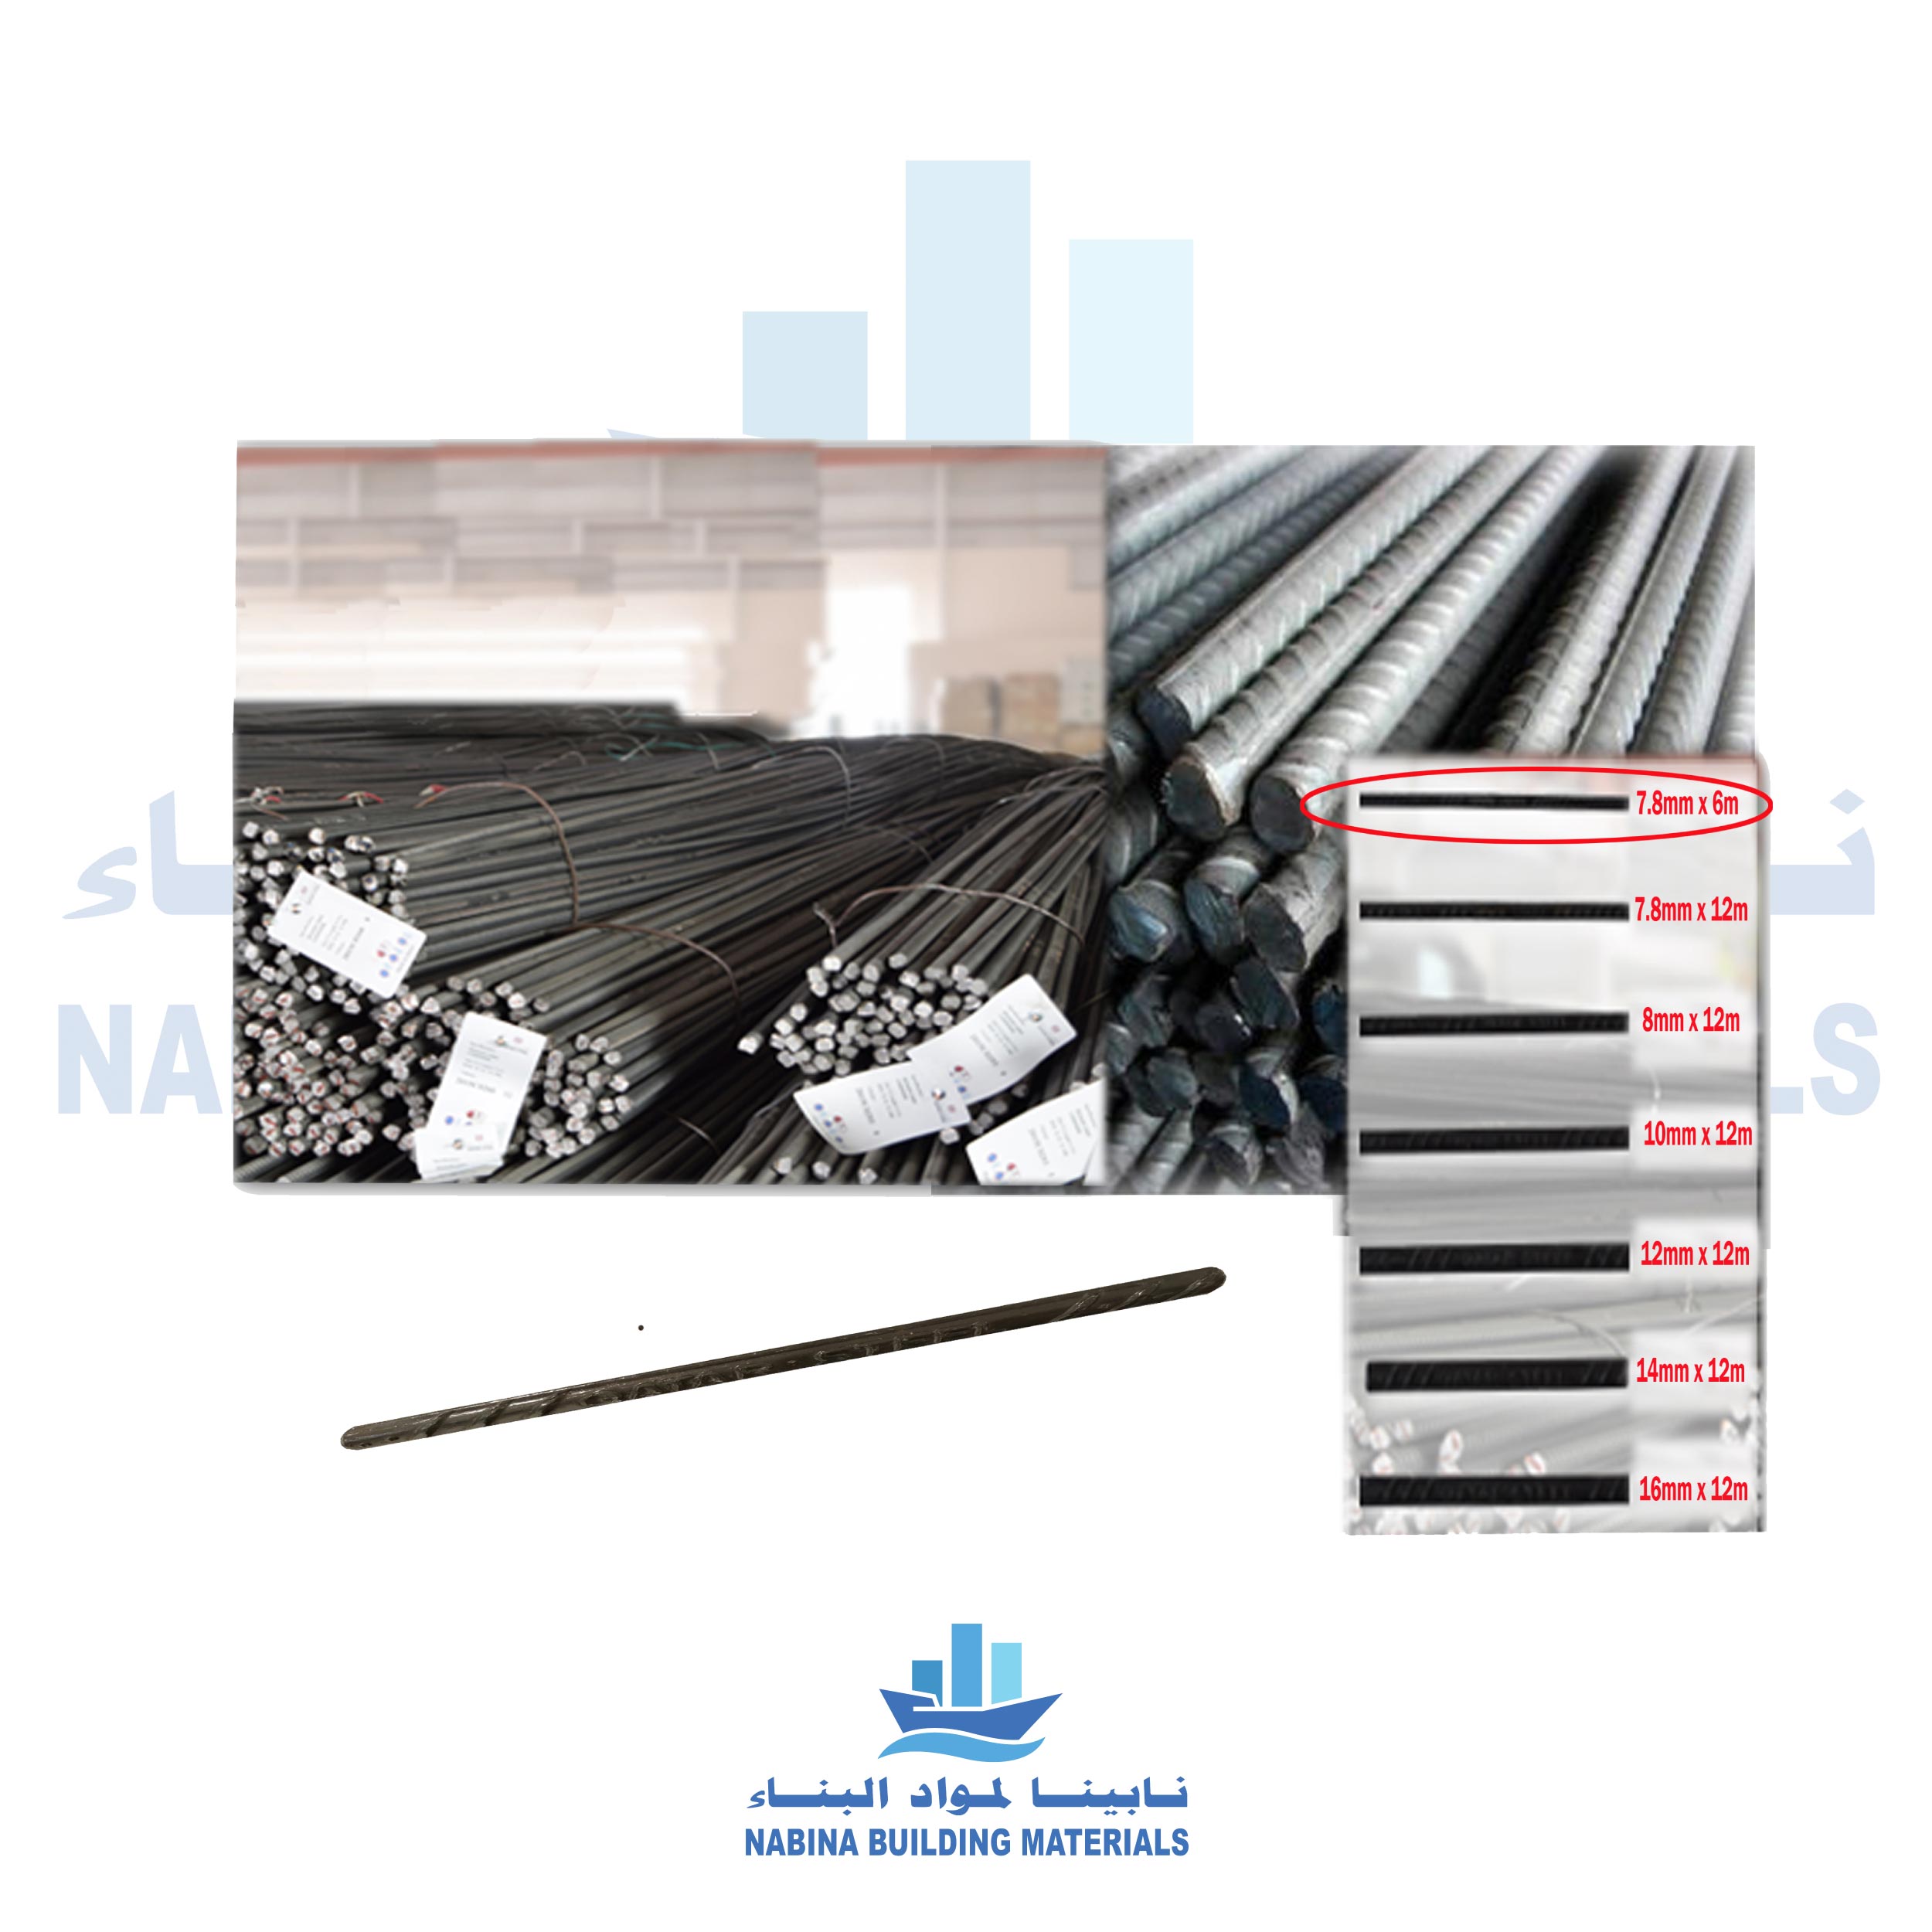 Nabina-Building-Materials-steel